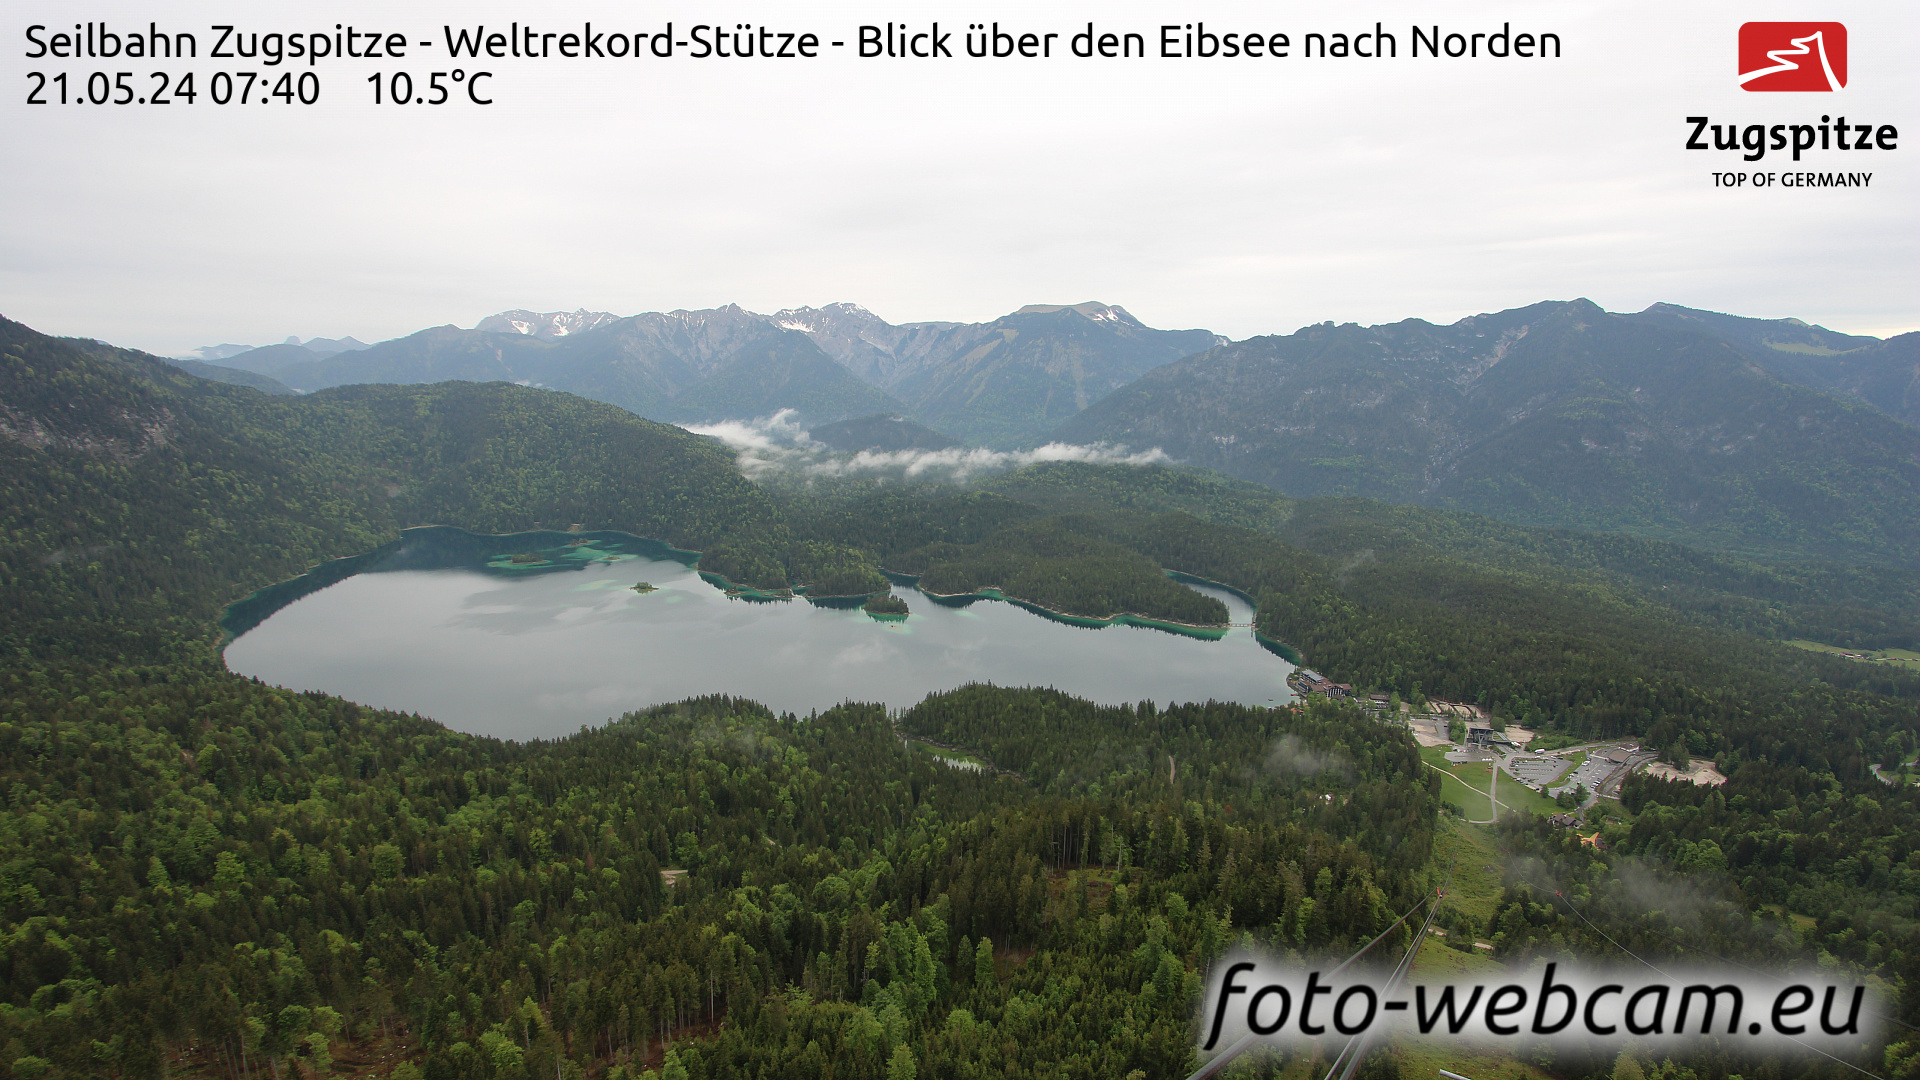 Zugspitze Wed. 07:49